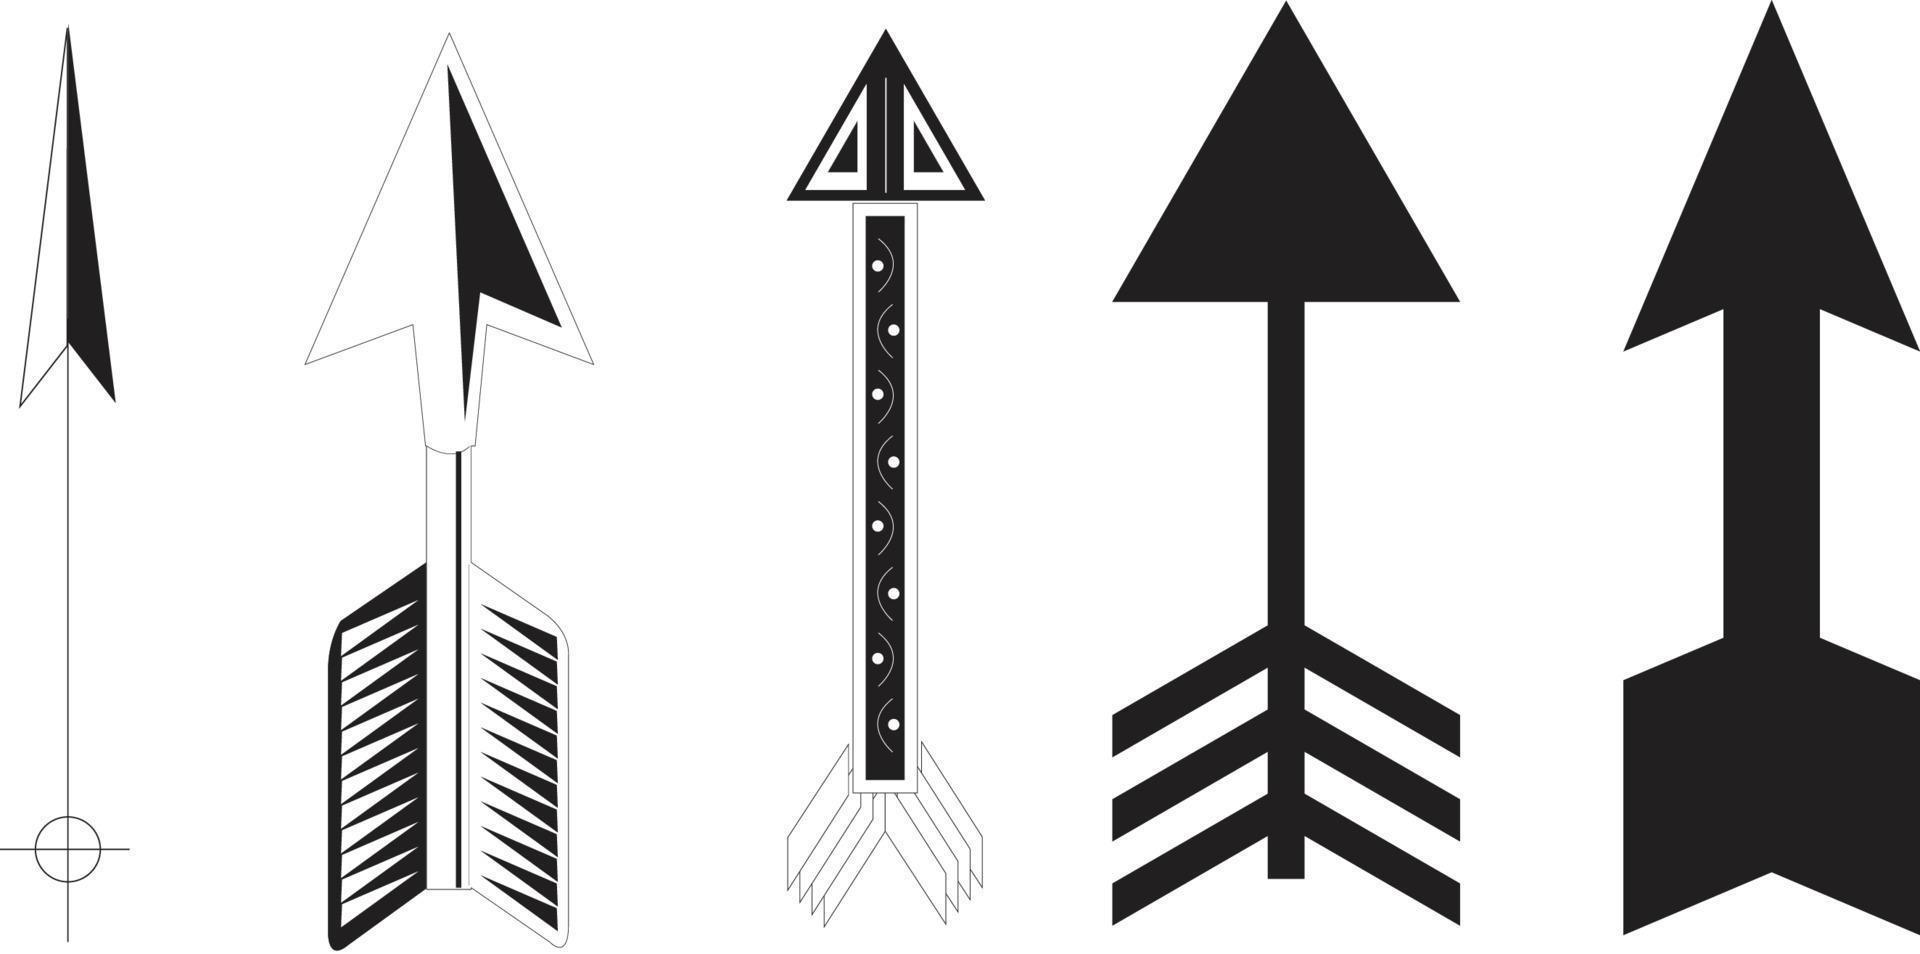 Arrows icons. Arrow icon. Arrow vector collection. Arrow. Cursor. Modern simple arrows. Vector illustration.